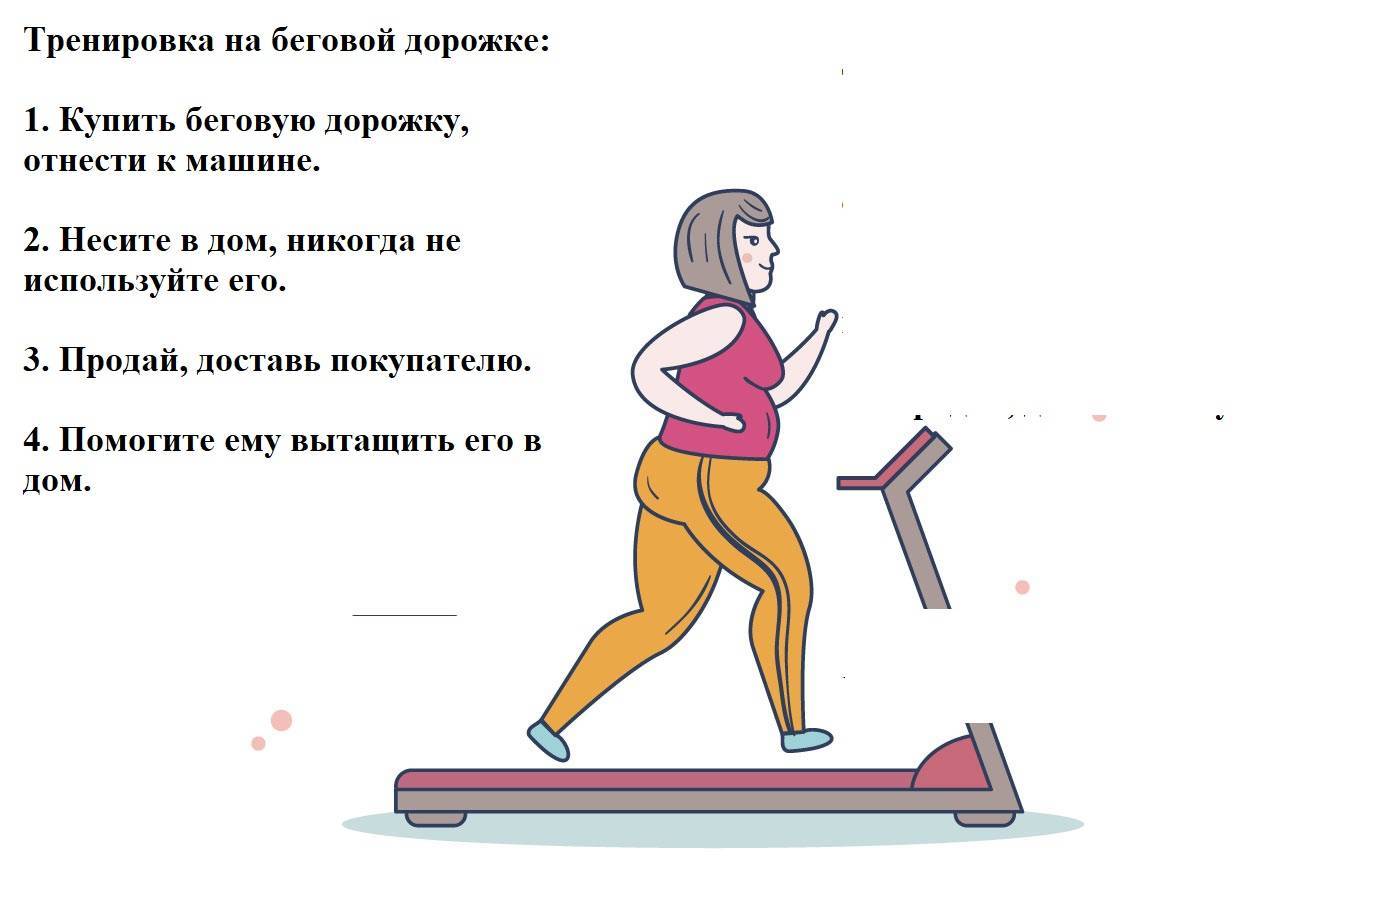 Ходьба на беговой дорожке для похудения и тренировки мышц | rulebody.ru — правила тела